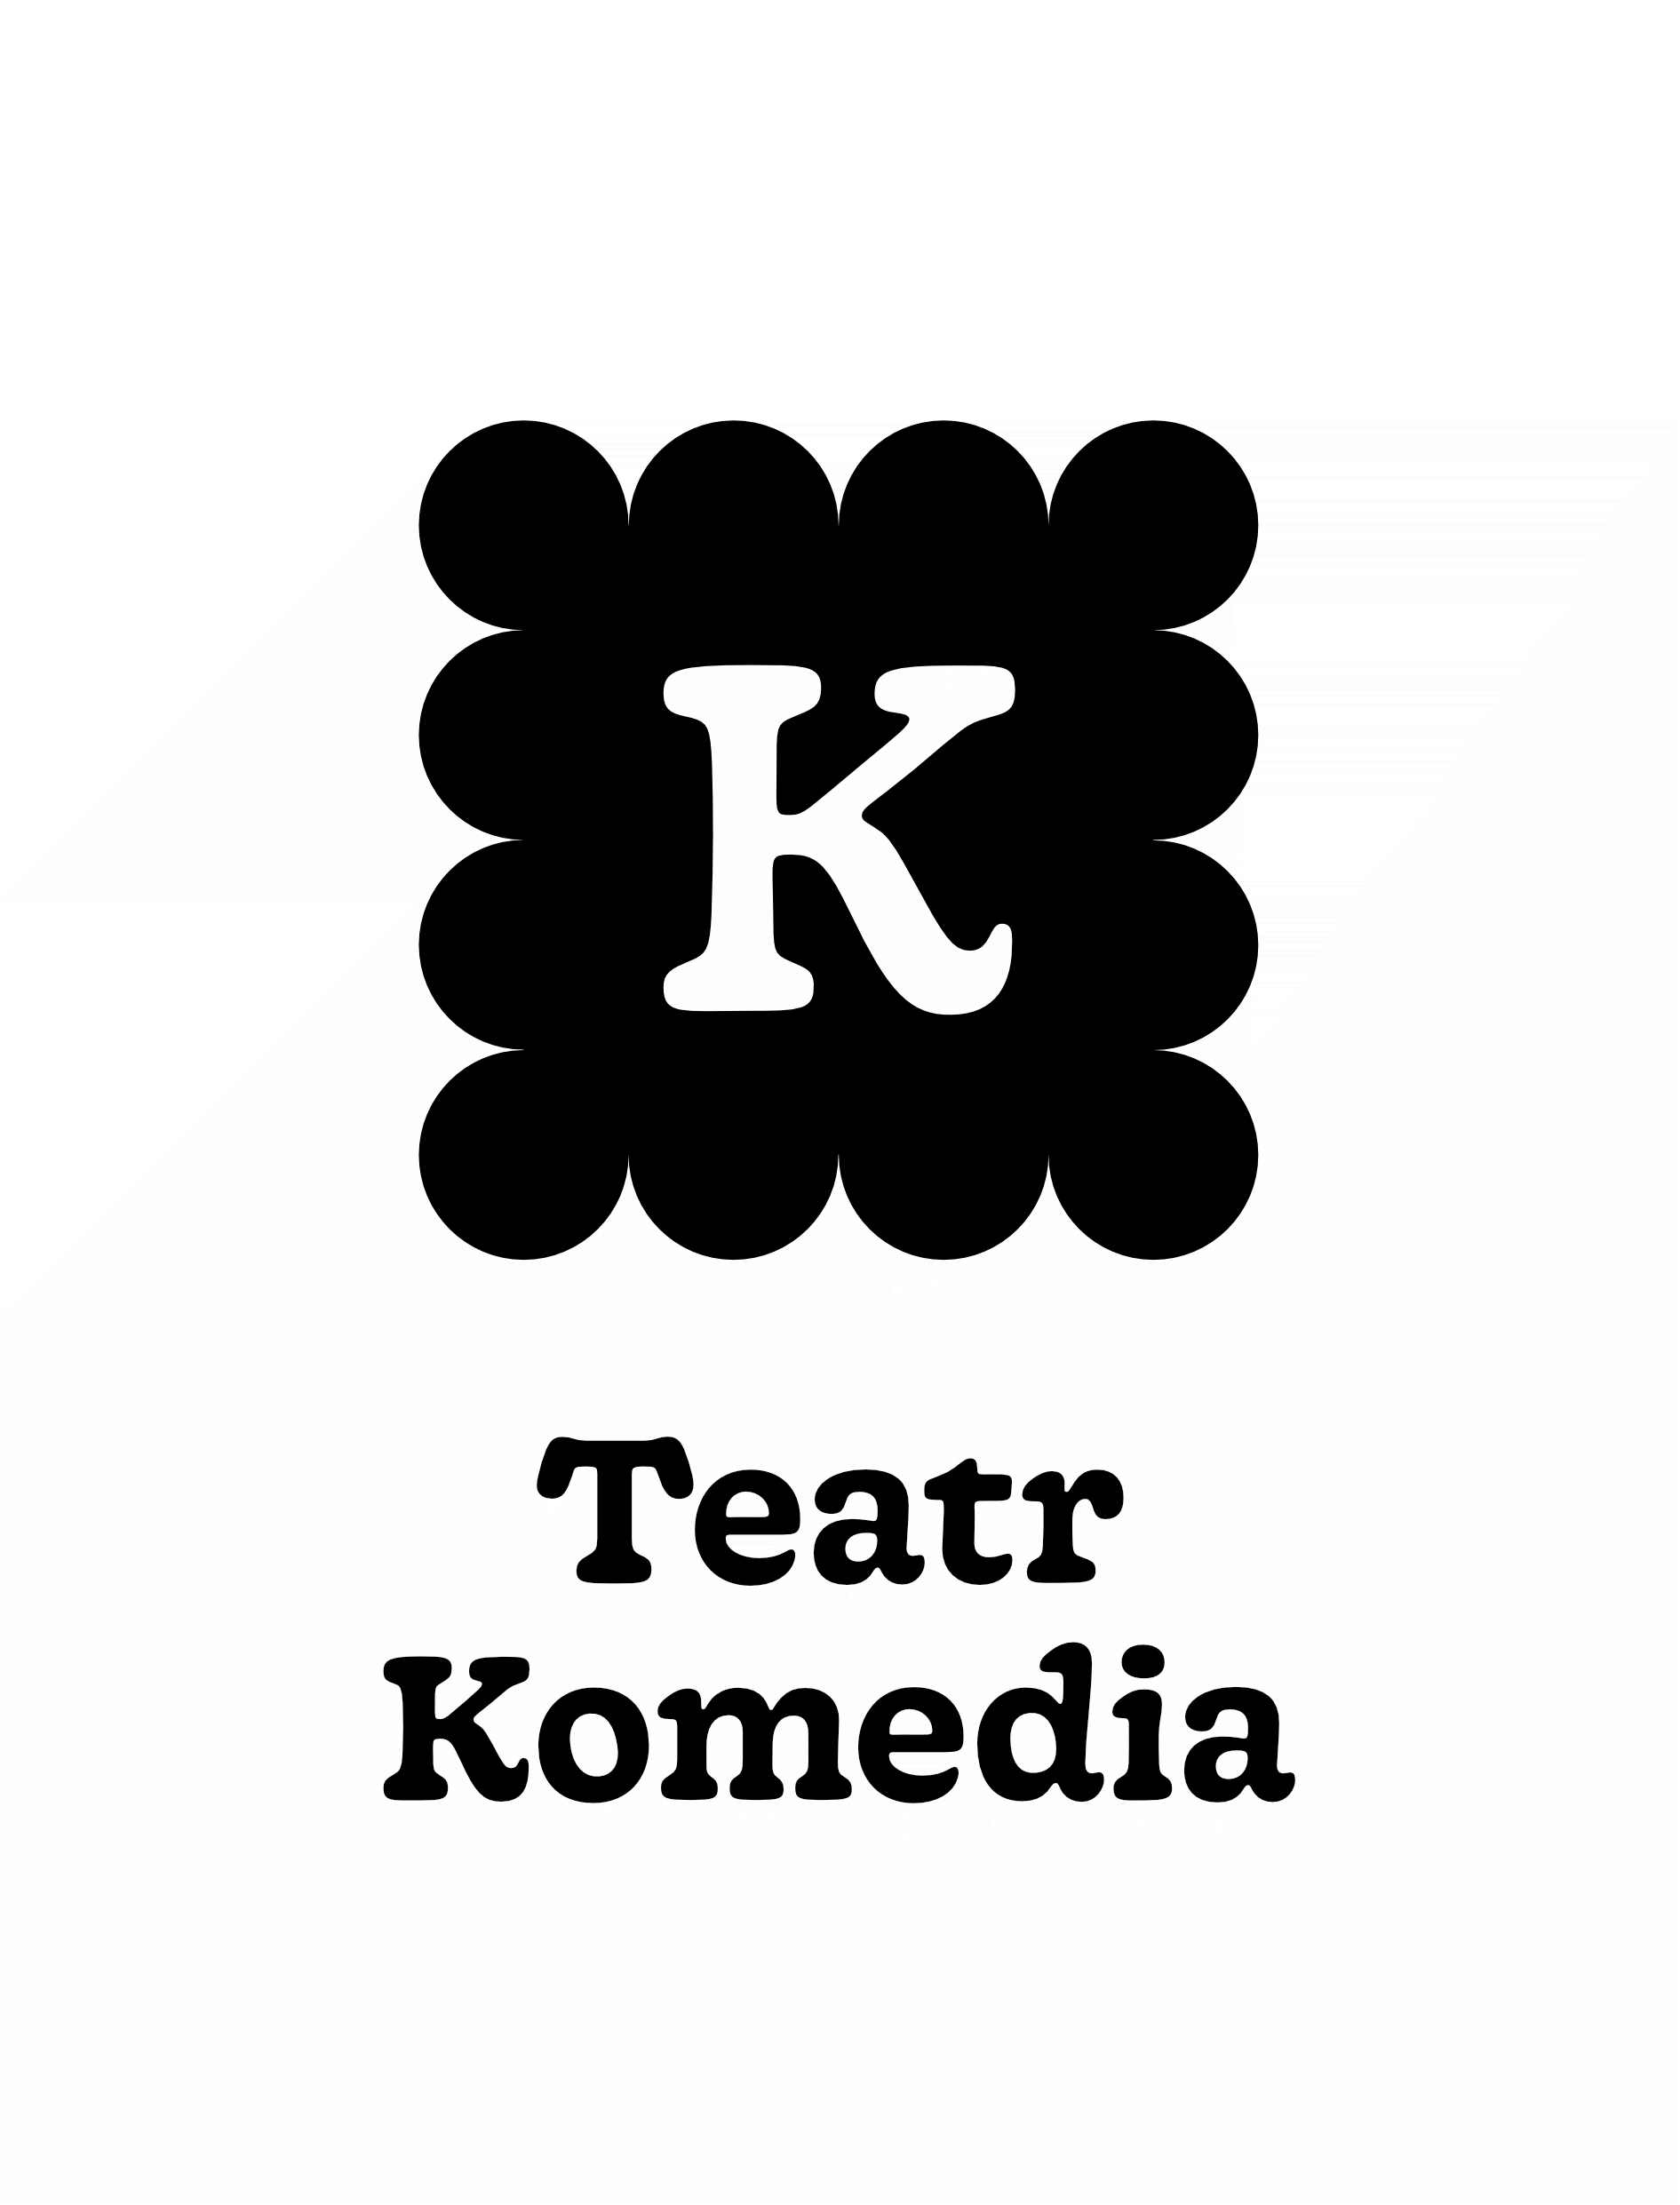 Czarny herbatnik z wpisaną w kształt białą literą K. Poniżej grafiki nazwa instytucji - Teatr Komedia.